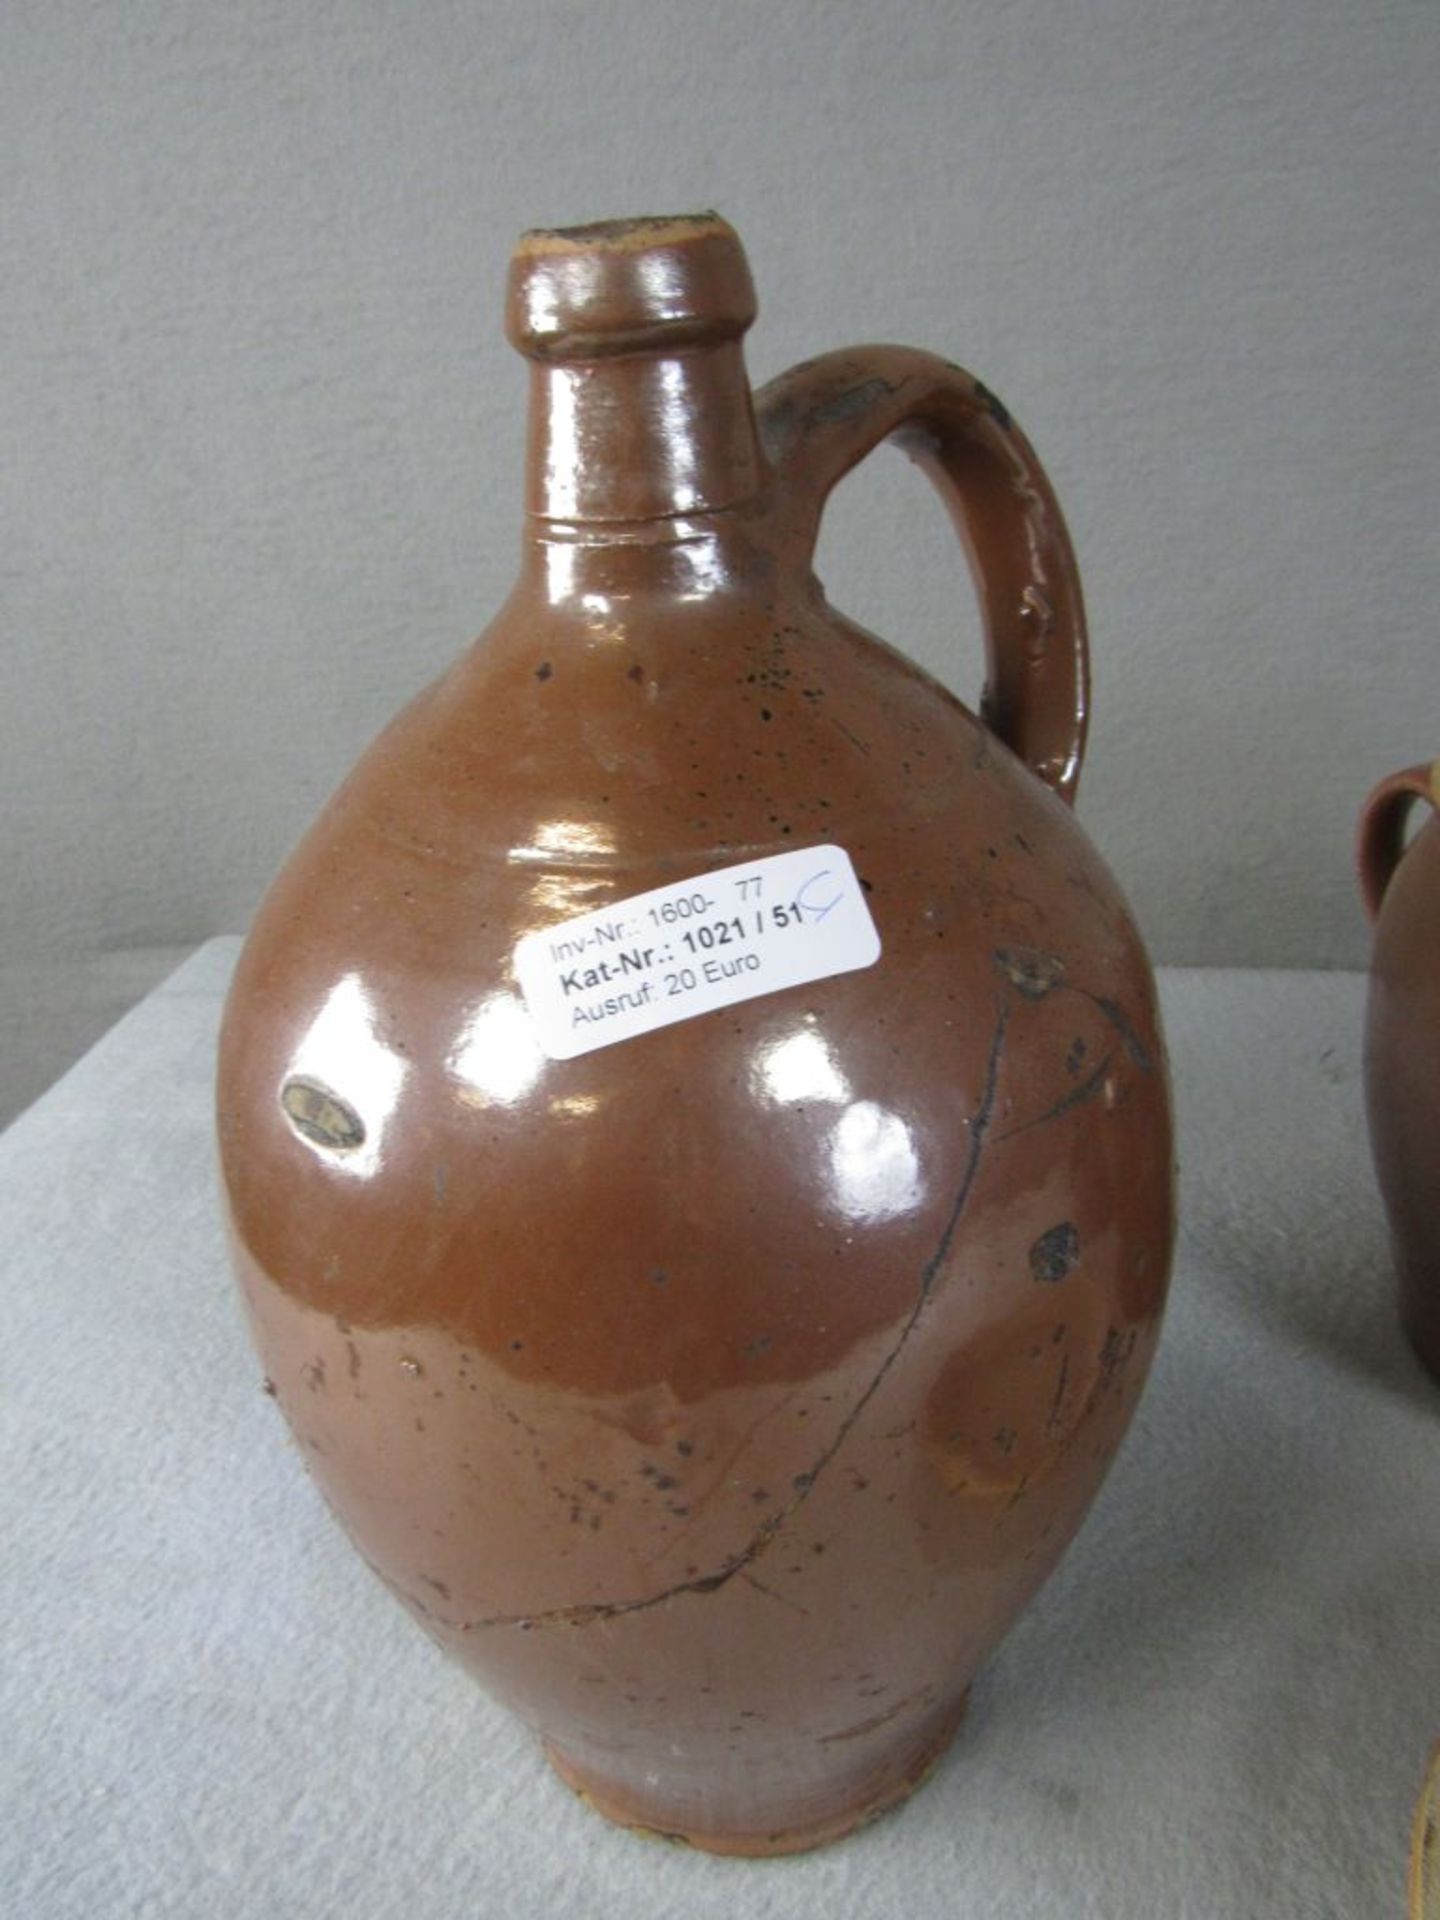 Vier Teile antike Keramik unter anderem Henkelkrug um 1800 von 4-34cm - Image 2 of 4